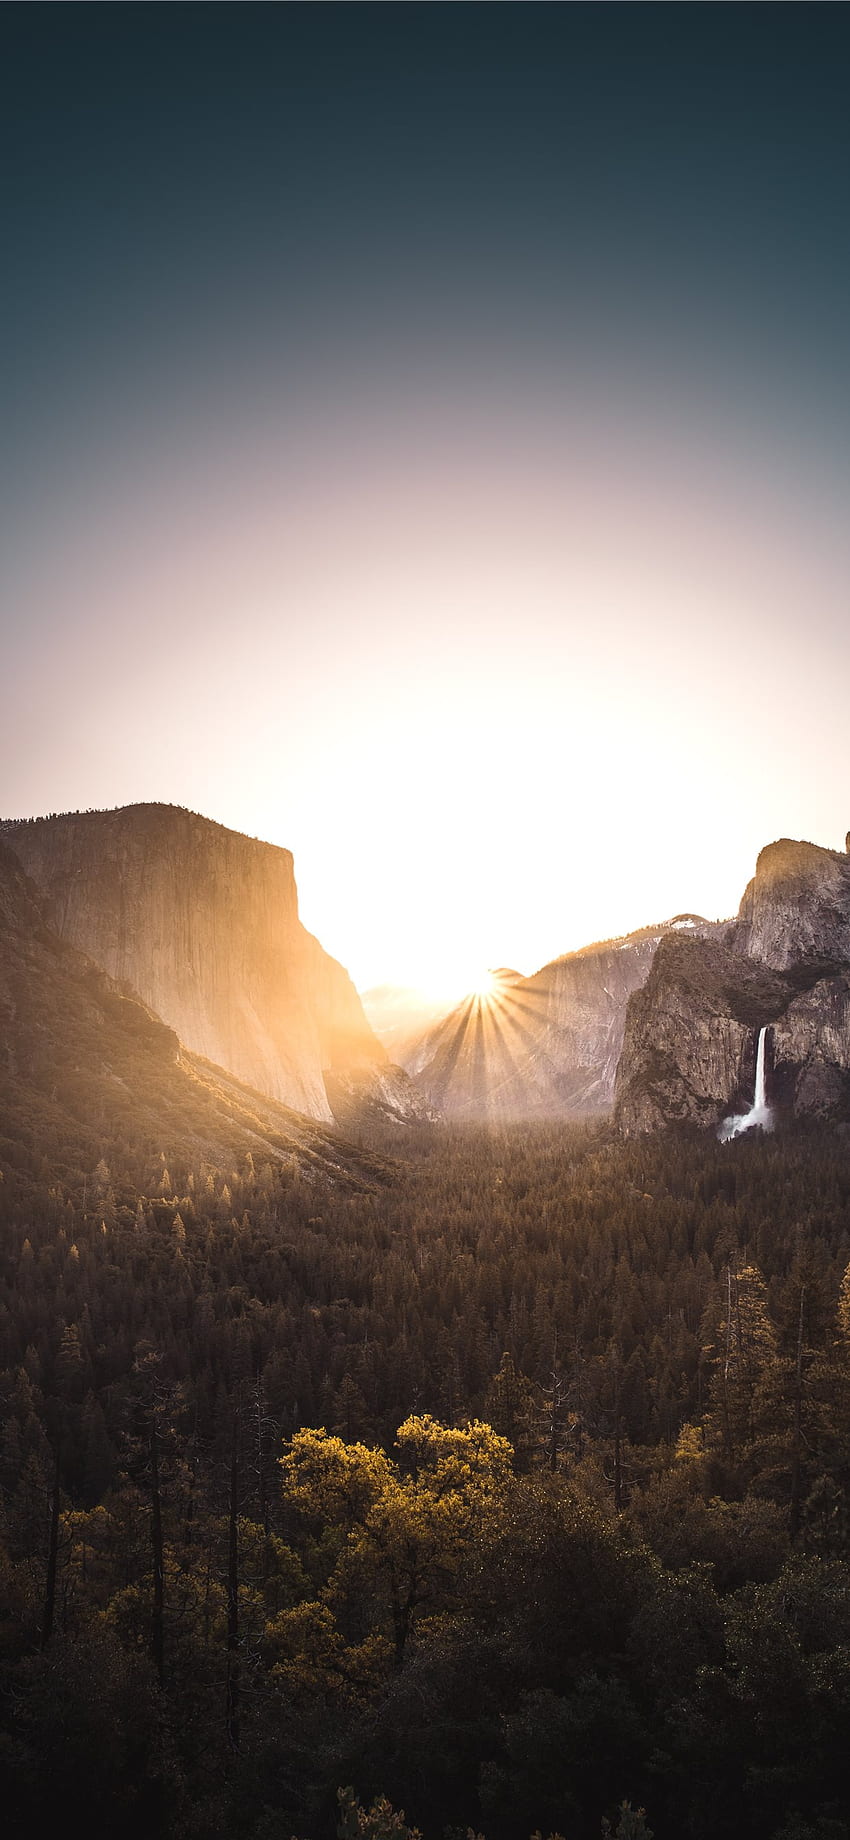 montaña gris rodeada de árboles durante el amanecer iPhone X, Sunrise Mountains fondo de pantalla del teléfono